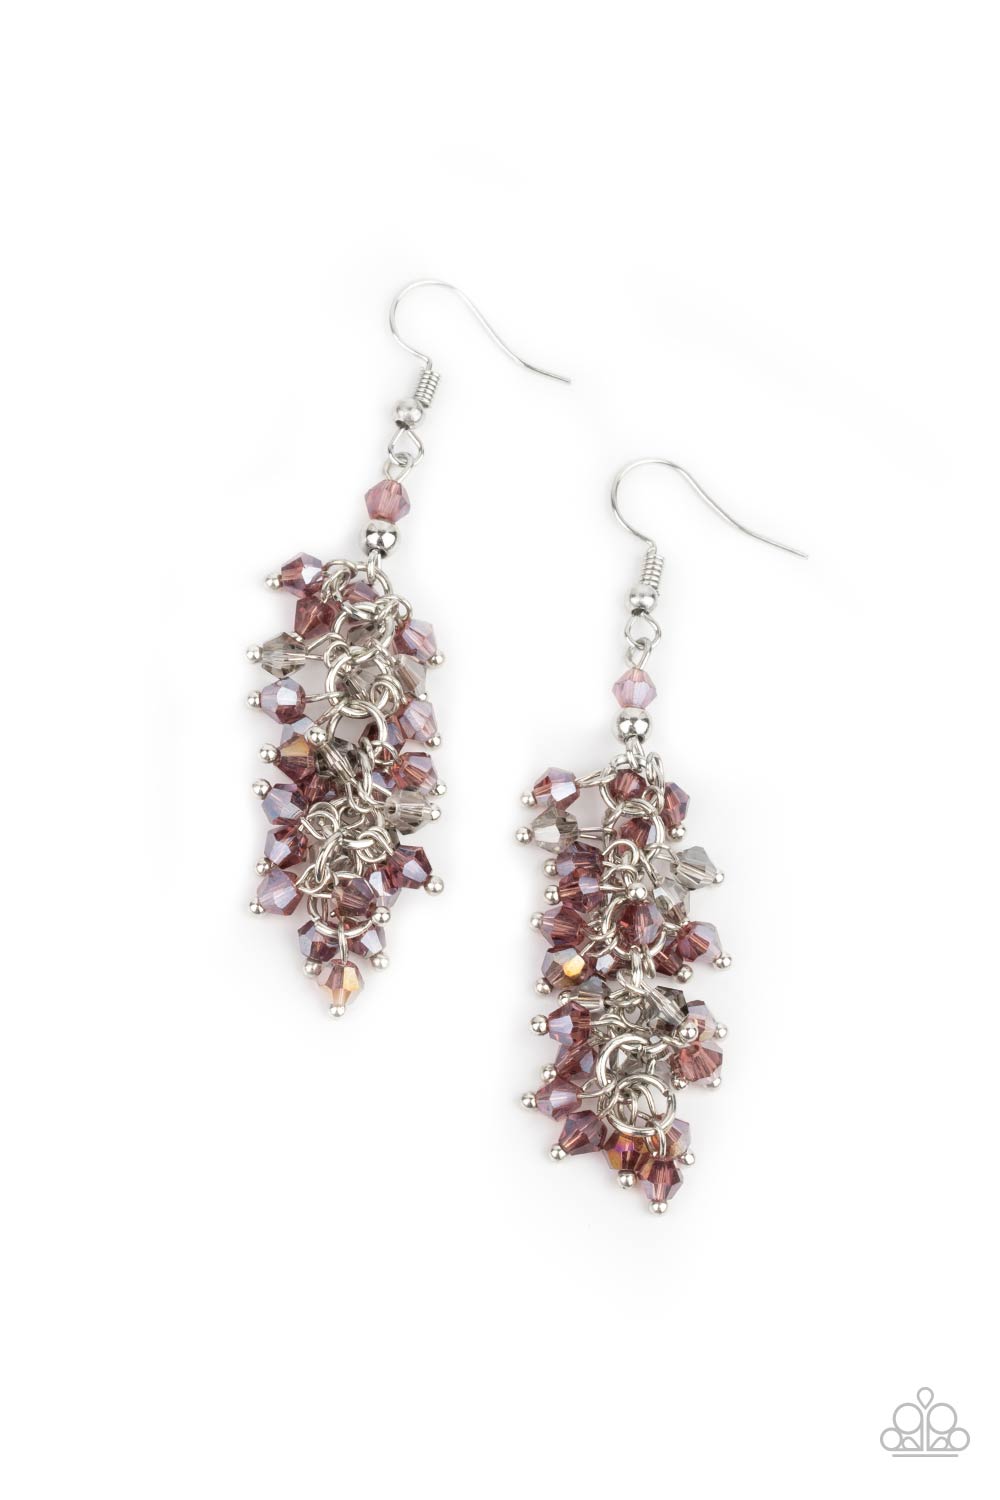 Celestial Chandeliers - Purple Earrings - Princess Glam Shop